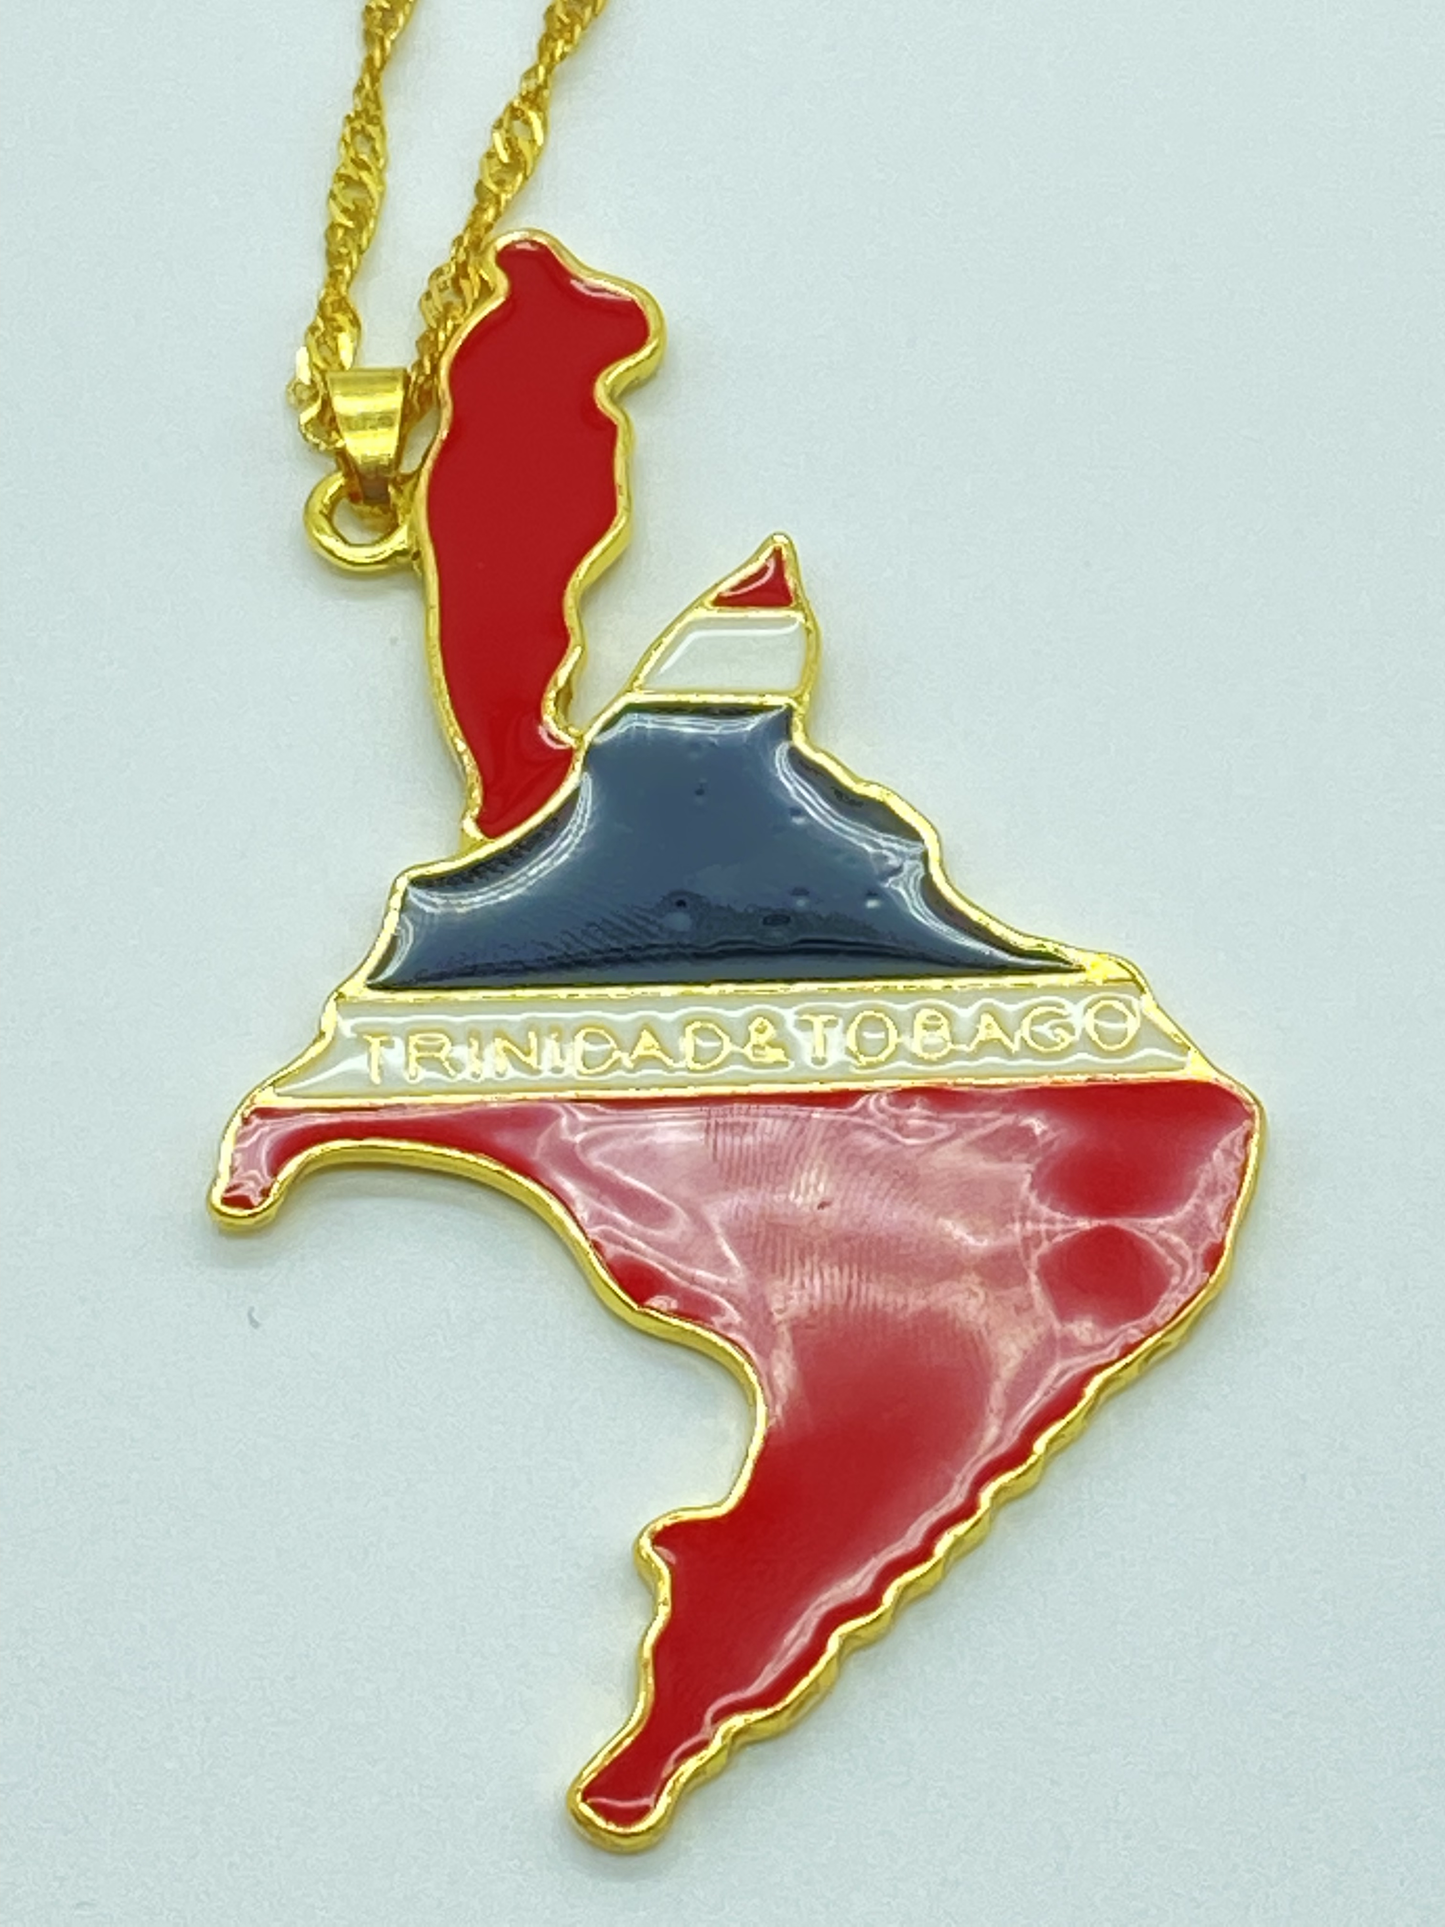 Trinidad and Tobago Necklace